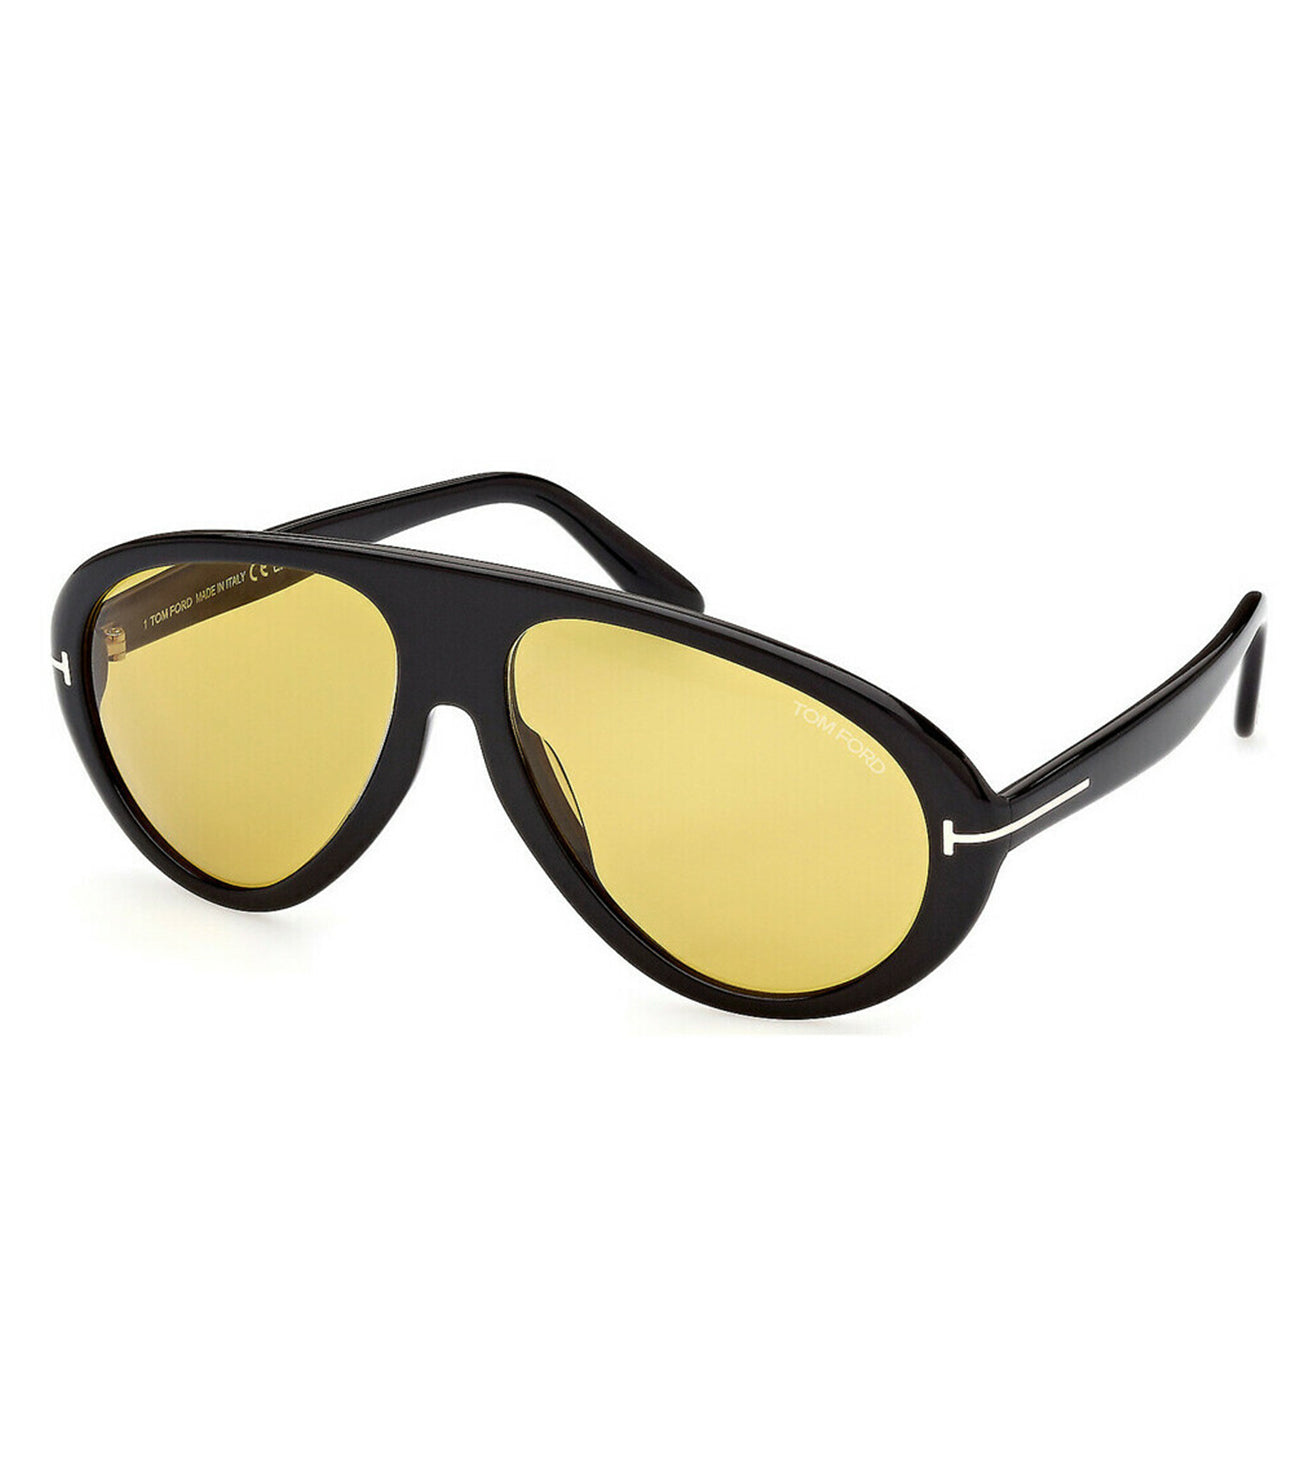 Tom Ford Men's Yellow Aviator Sunglasses